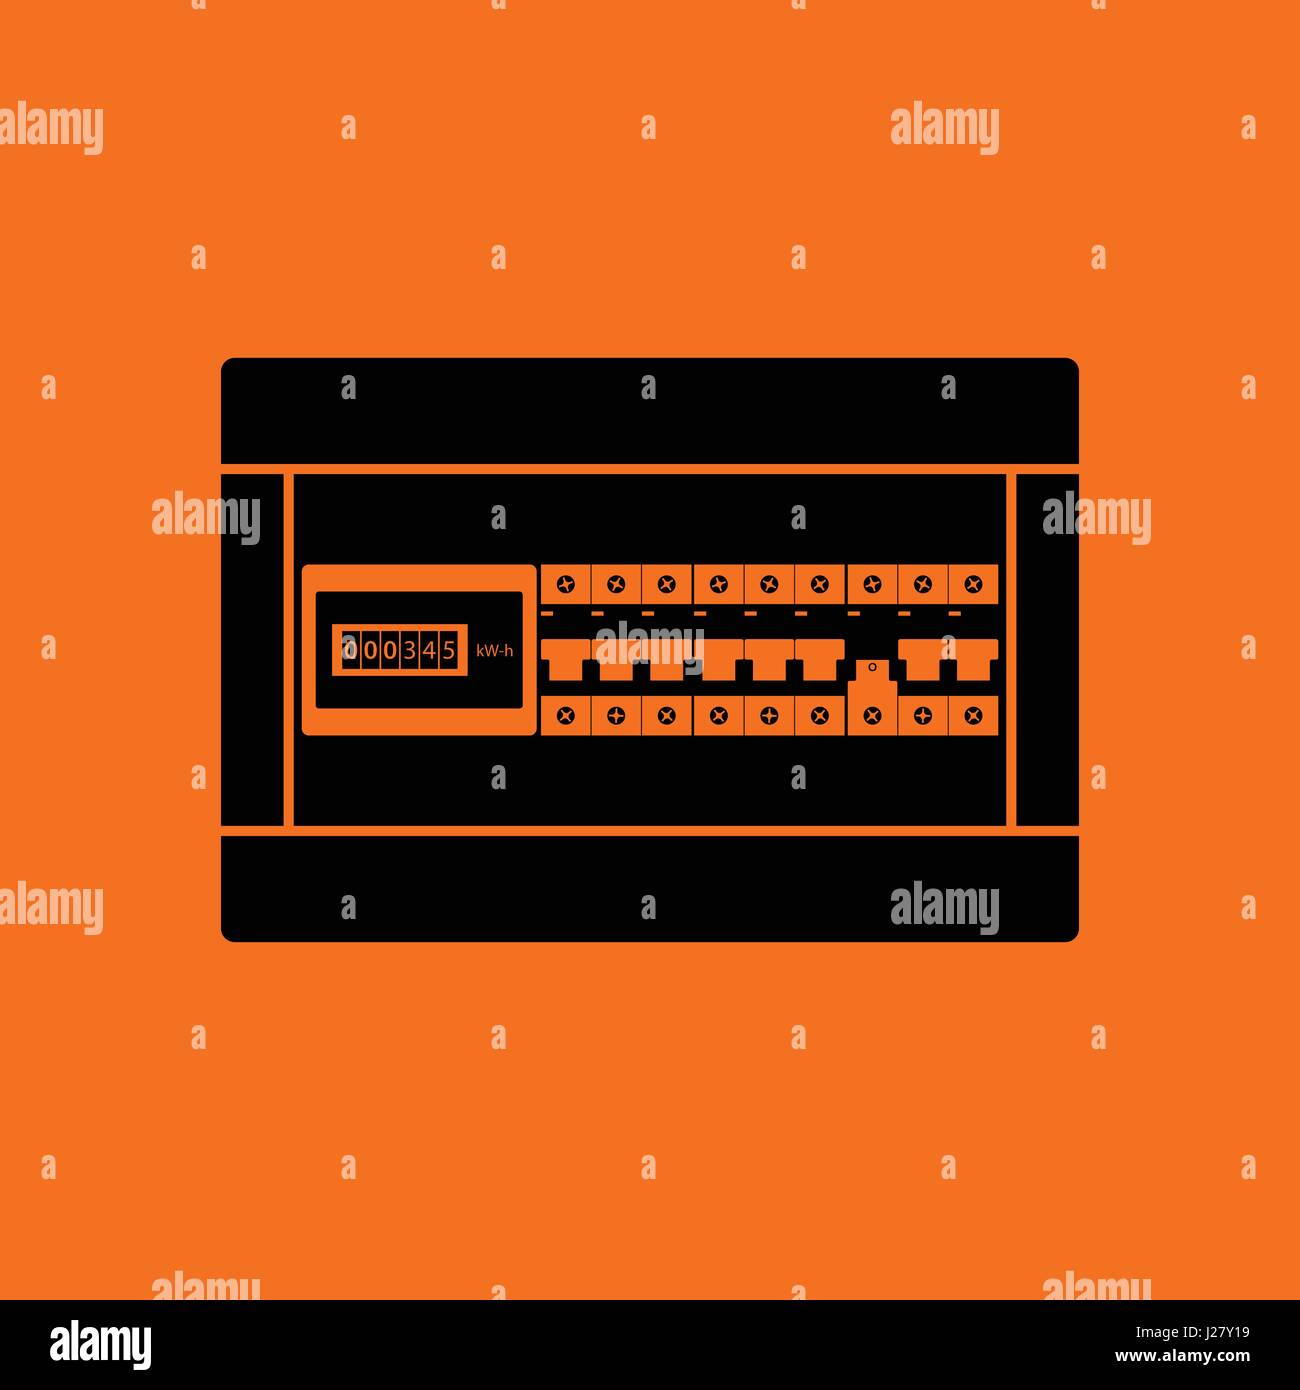 Leistungsschalter Feld Symbol. Orangefarbenen Hintergrund mit schwarz. Vektor-Illustration. Stock Vektor